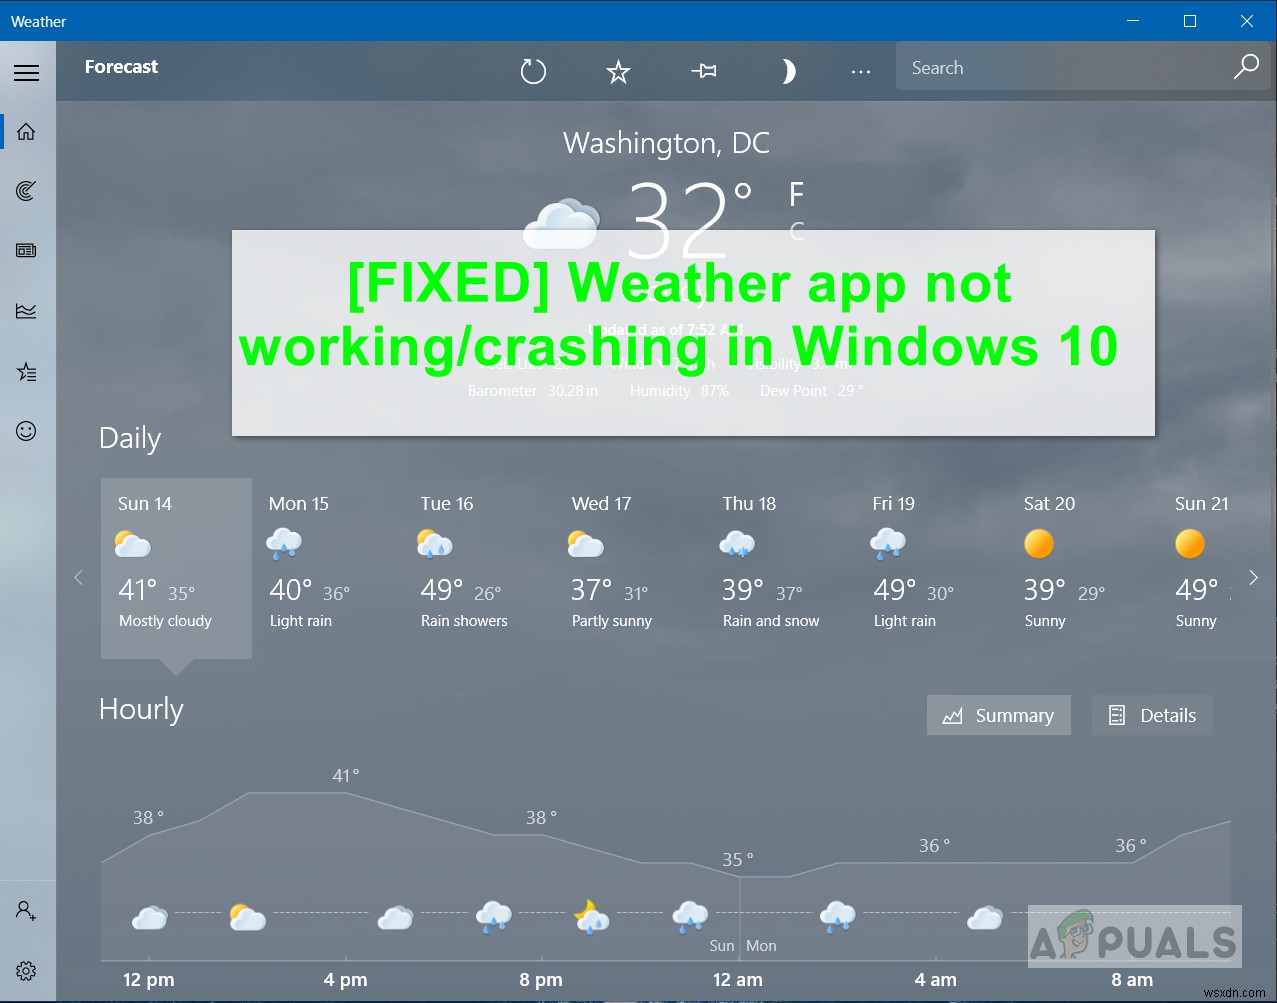 फिक्स:विंडोज 10 . में वेदर ऐप काम नहीं कर रहा / क्रैश हो रहा है 